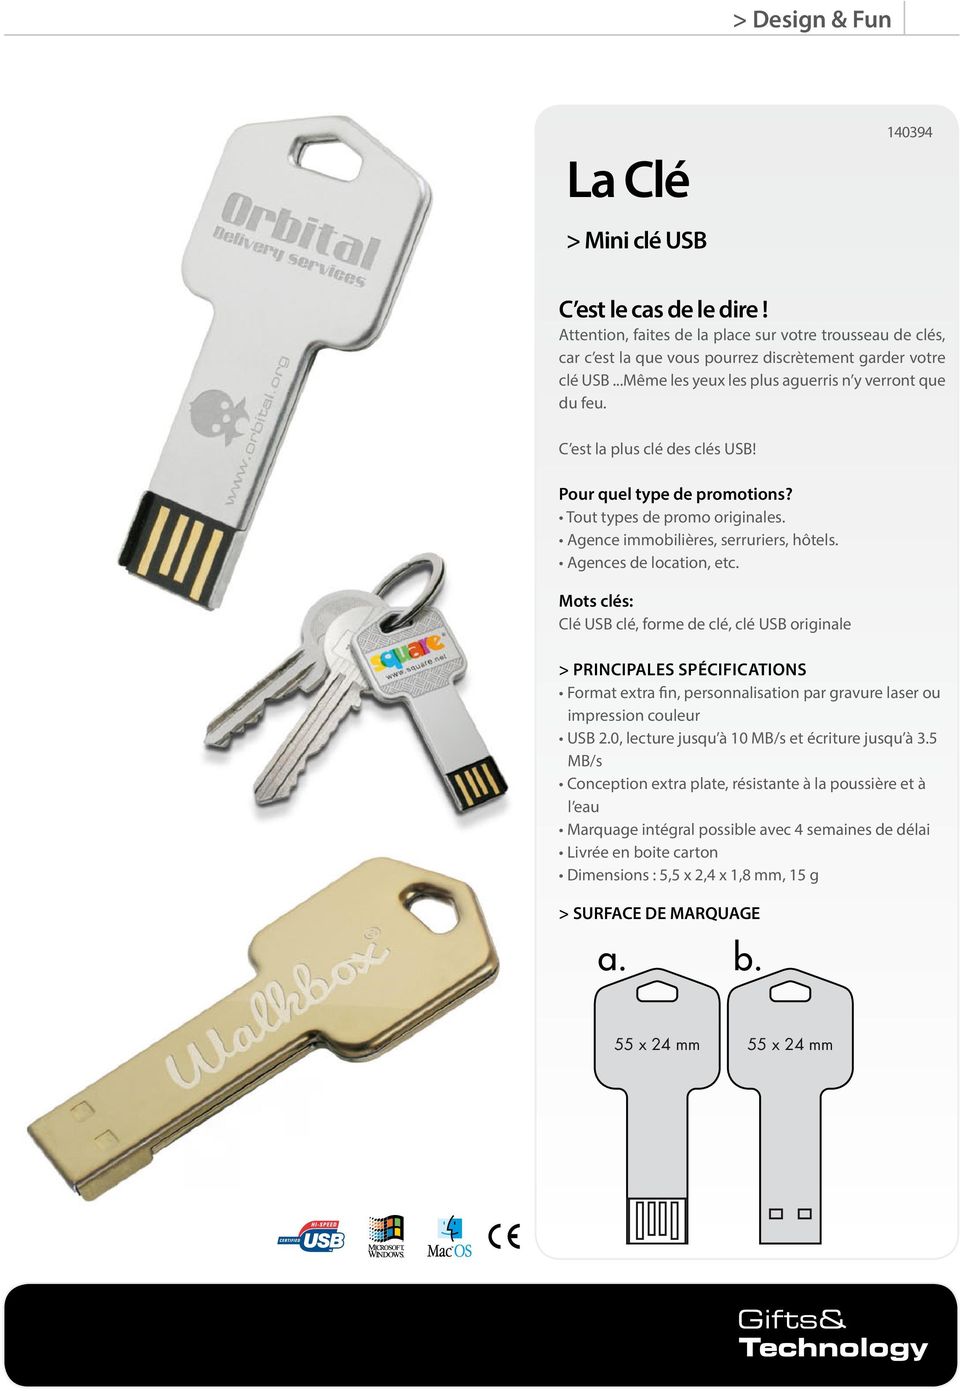 Agences de location, etc. Mots clés: Clé USB clé, forme de clé, clé USB originale > Principales SPÉCIFICATIONS Format extra fin, personnalisation par gravure laser ou impression couleur USB 2.